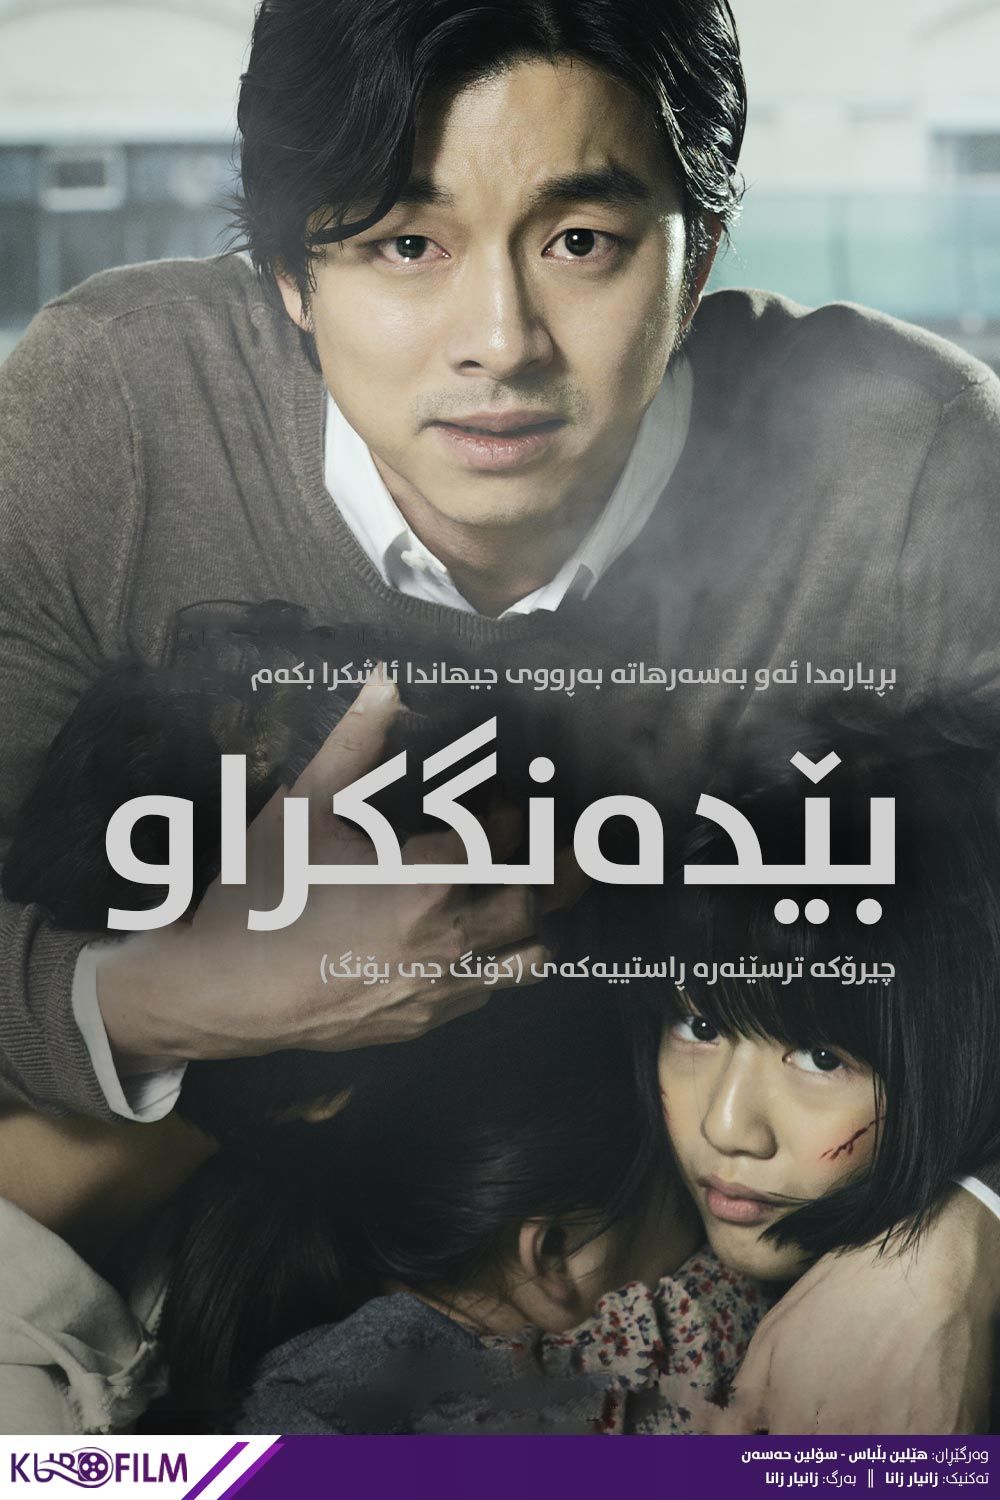 Silenced (2011)